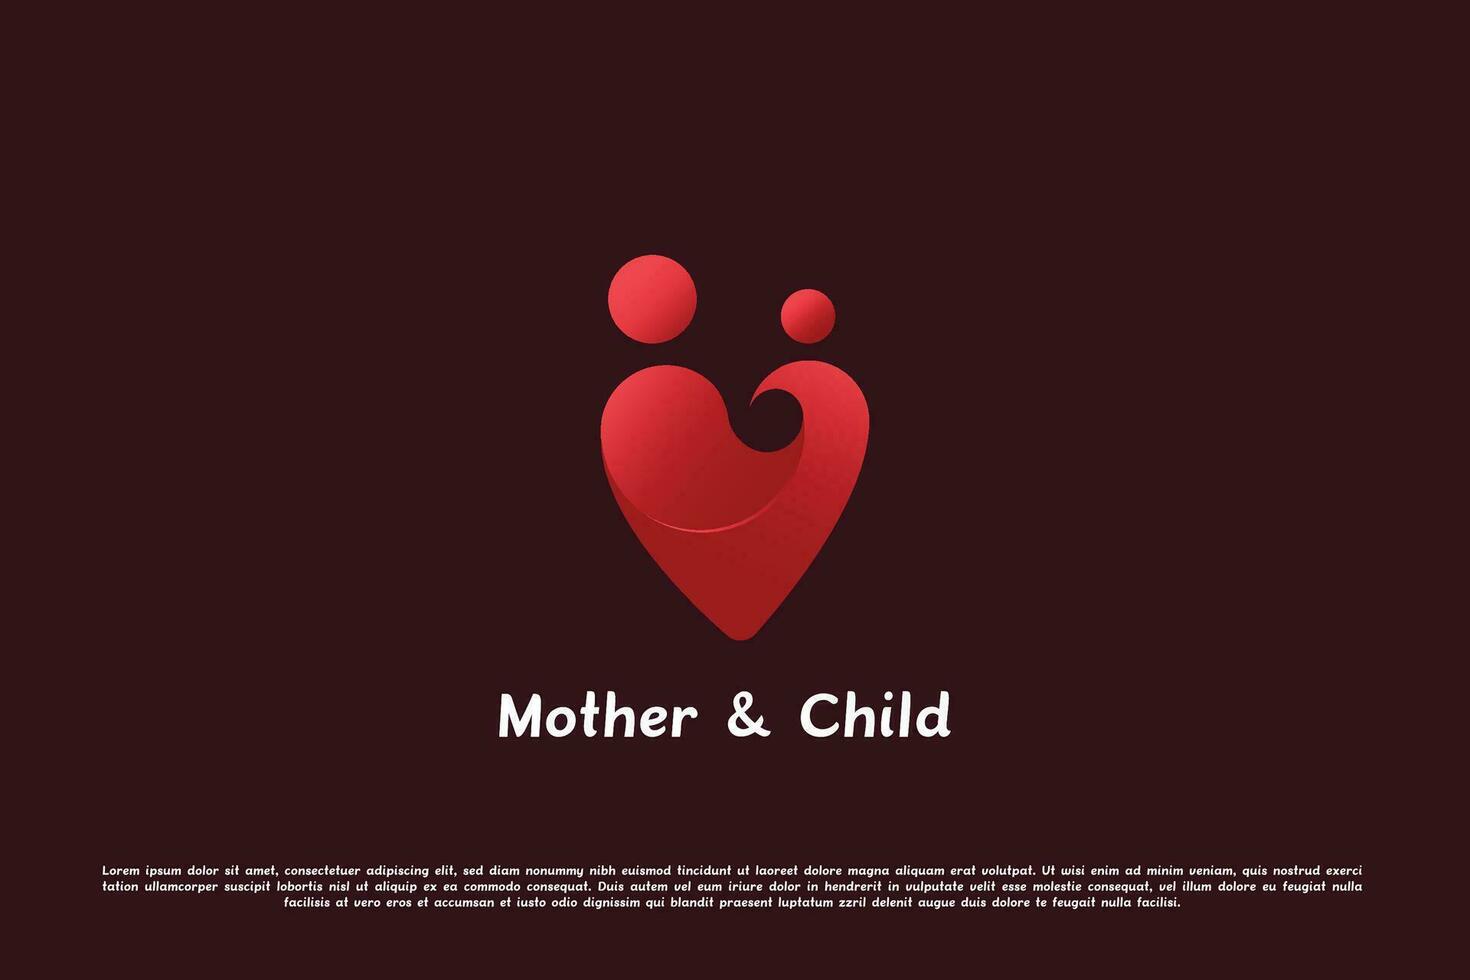 moderno degradado madre niño logo diseño ilustración. sencillo plano silueta de madre participación niño amor corazón contento lleno de amor afecto vida maternidad. minimalista sencillo plano icono concepto. vector